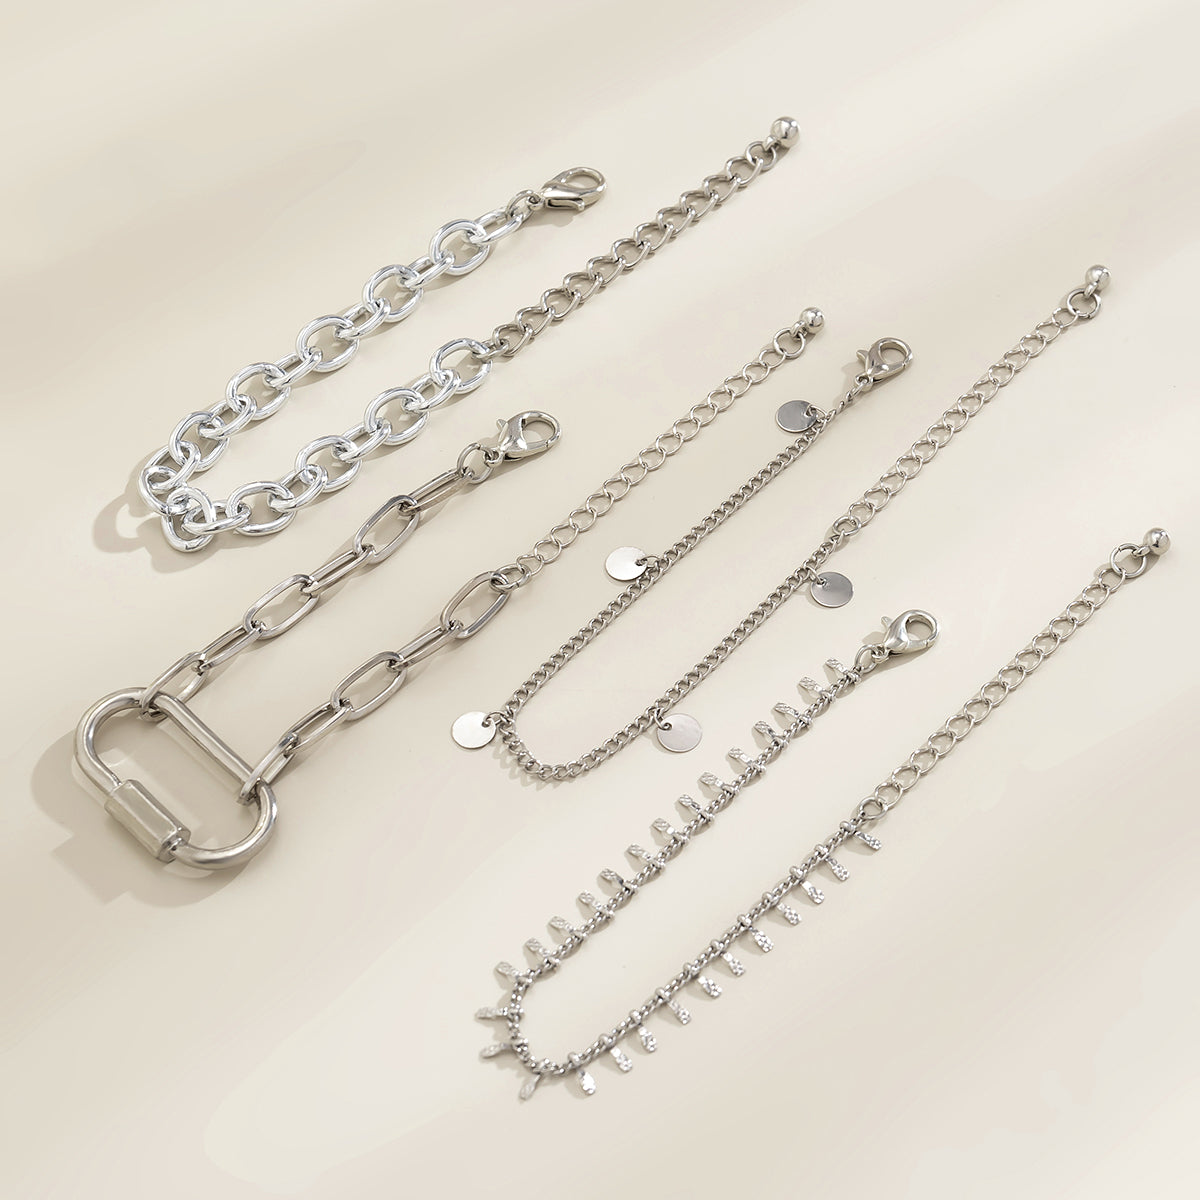 Silver-Plated Oval Charm Bracelet Set